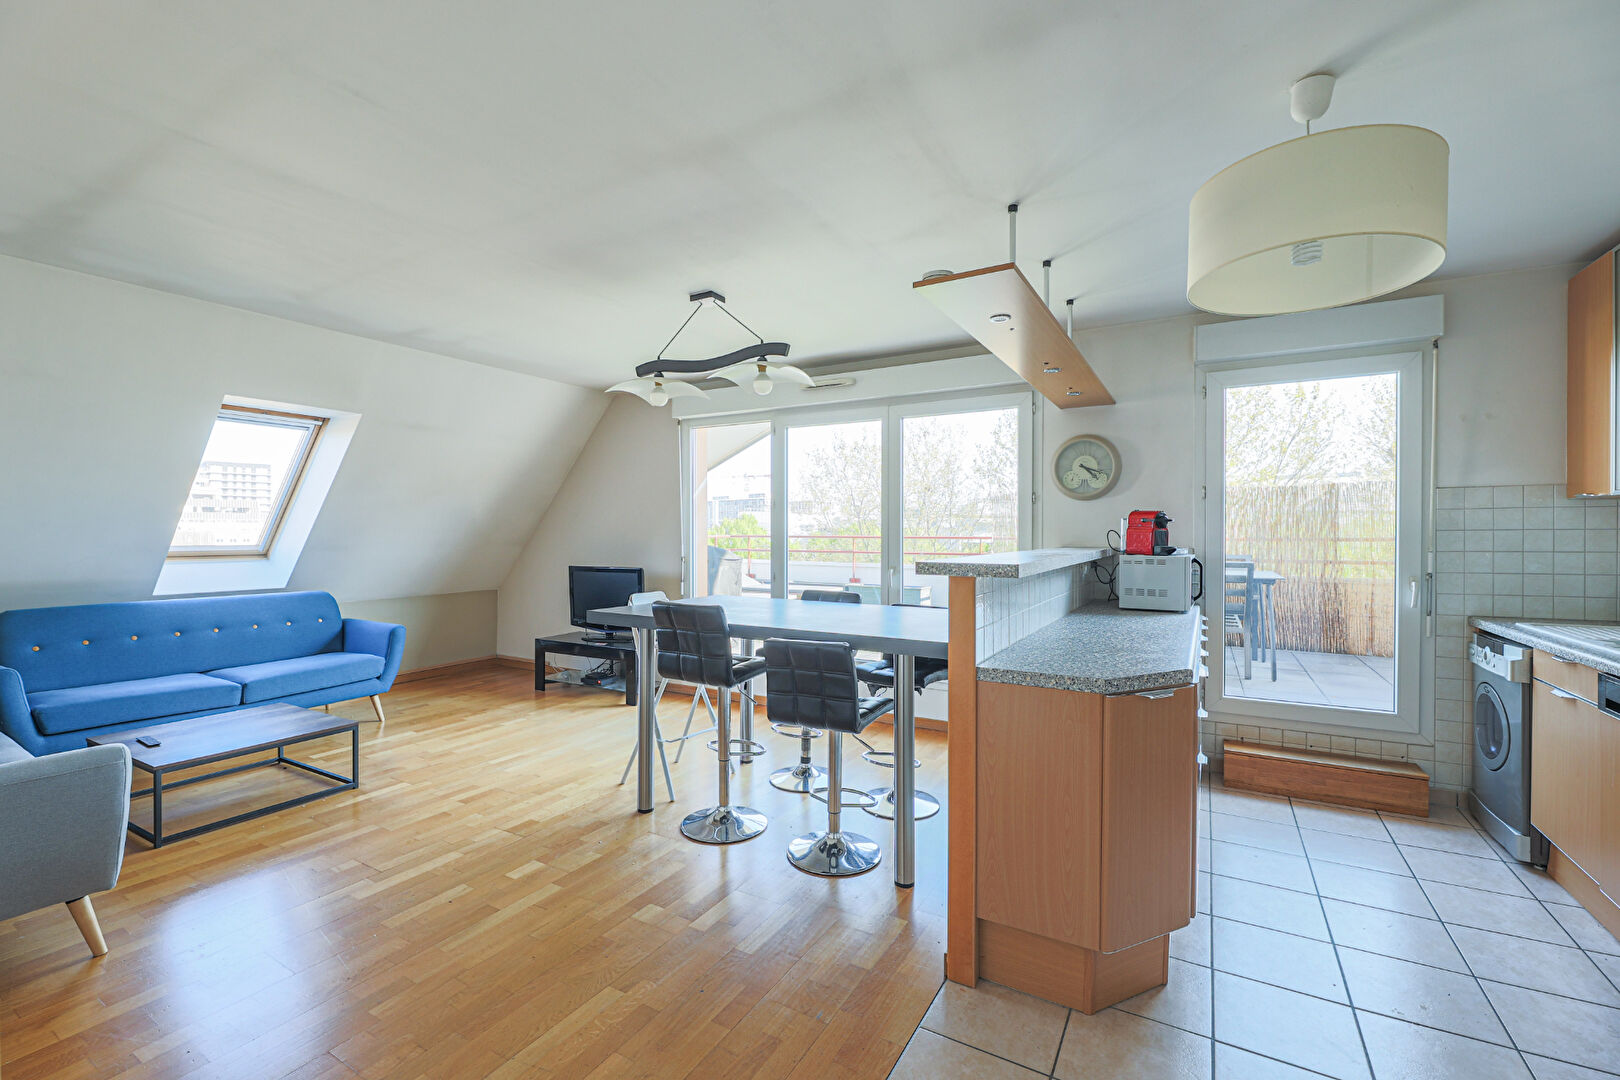 Appartement familial de 74 m² environs en dernier étage avec terrasse! 4